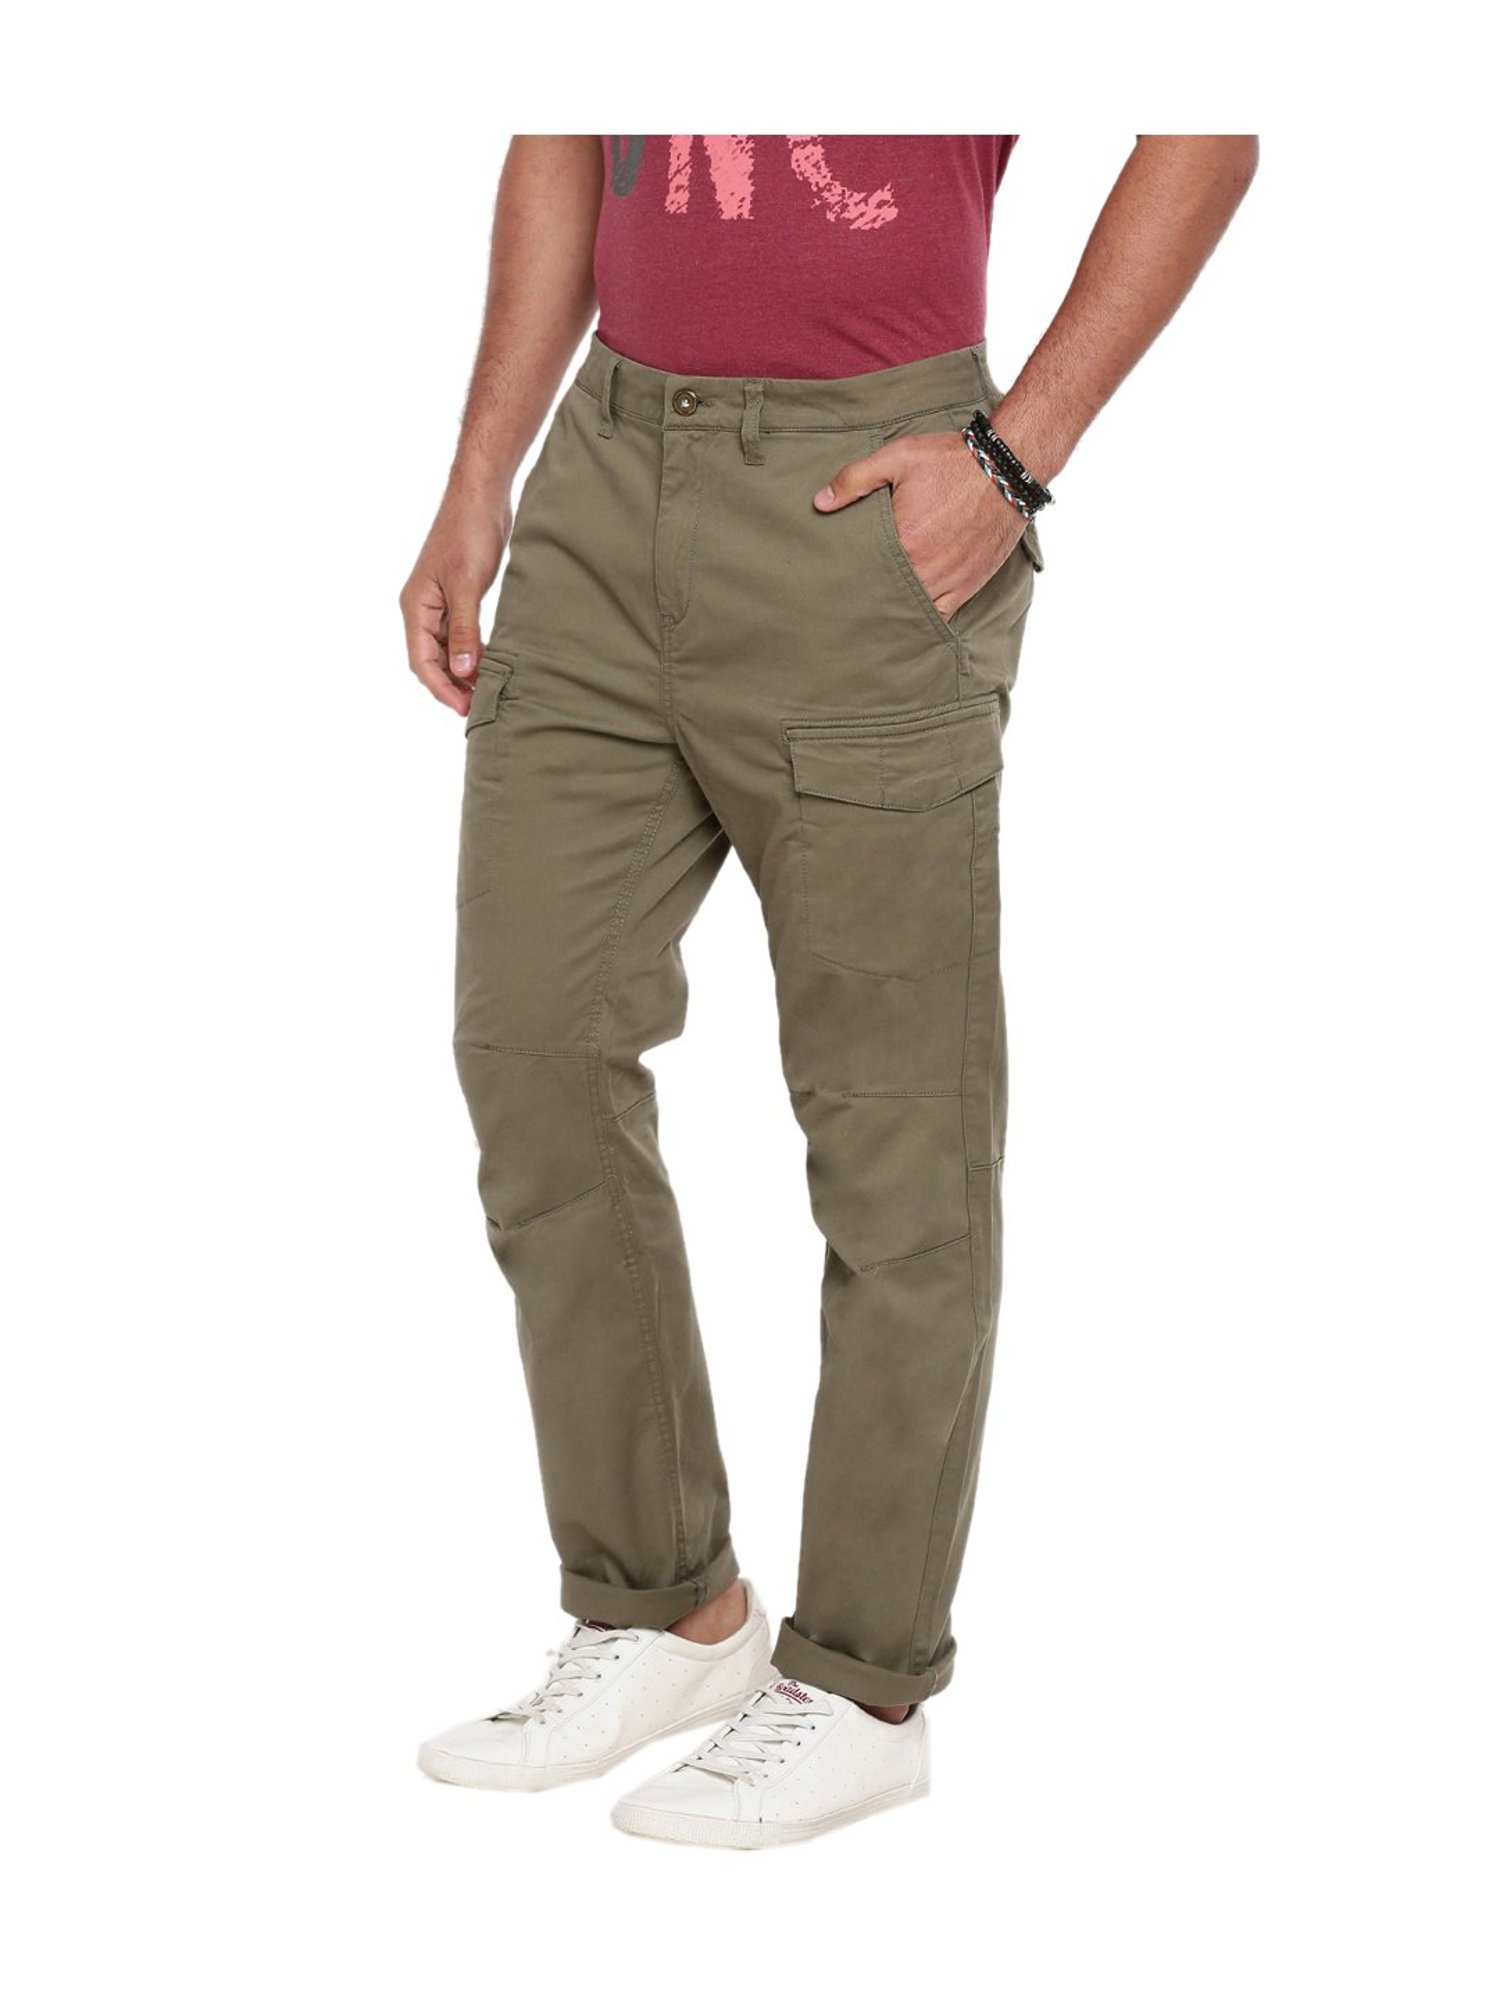 Buy Men's Brown Slim Fit Trousers Online at Bewakoof